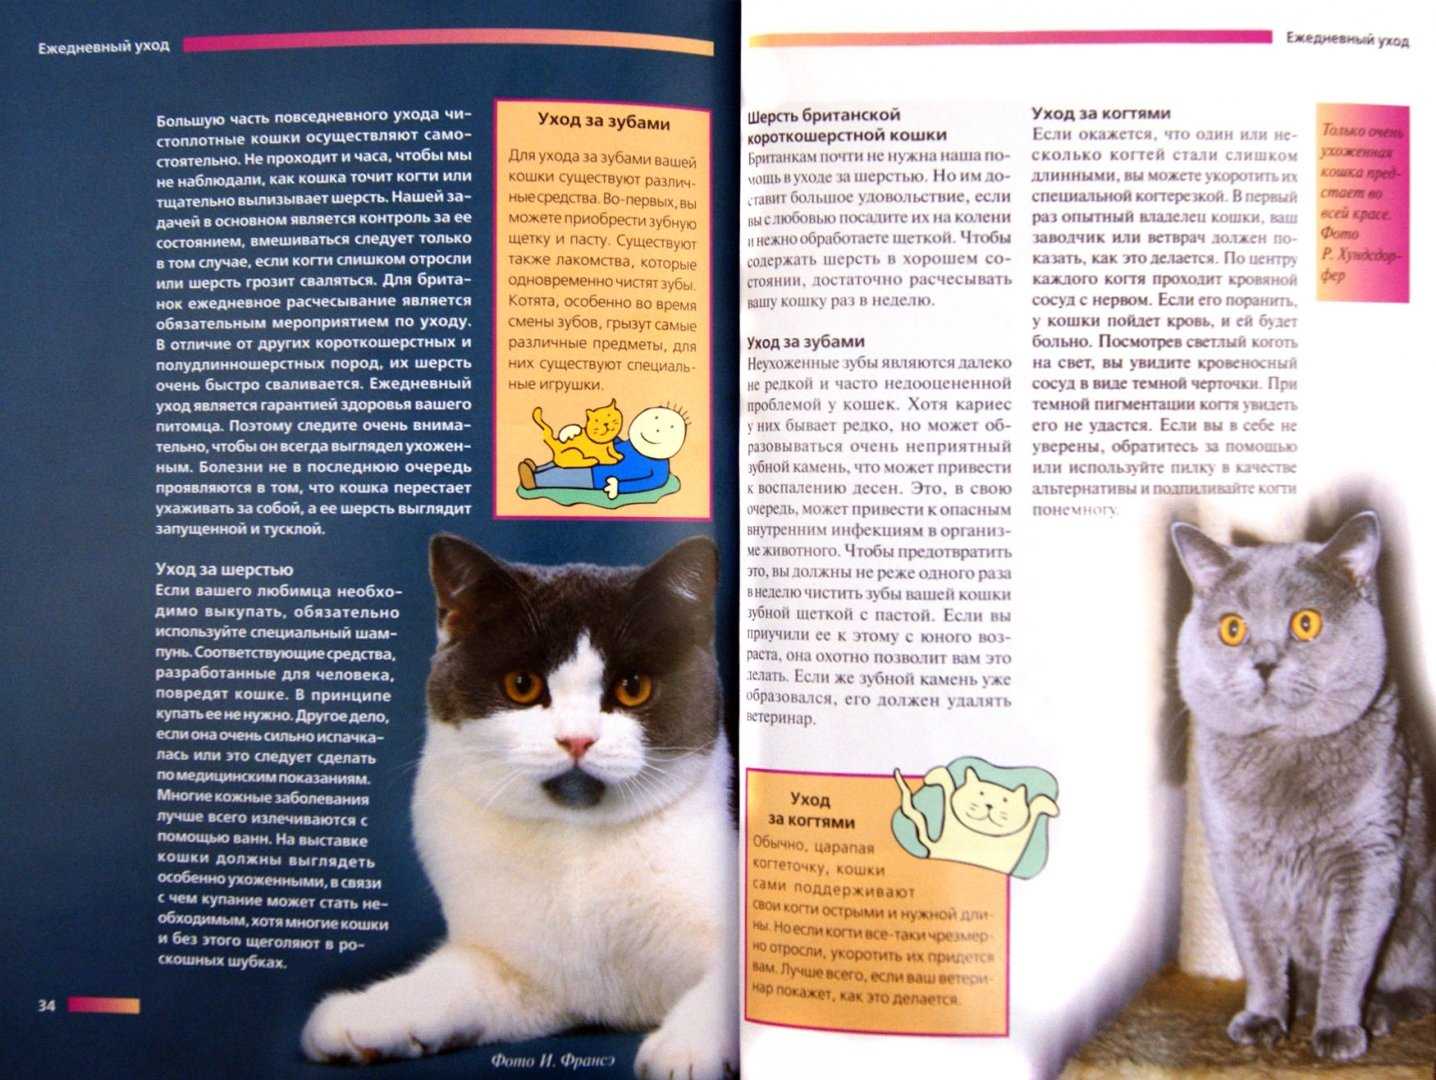 Кошки британской породы: характеристика, окрас, описание стандарта